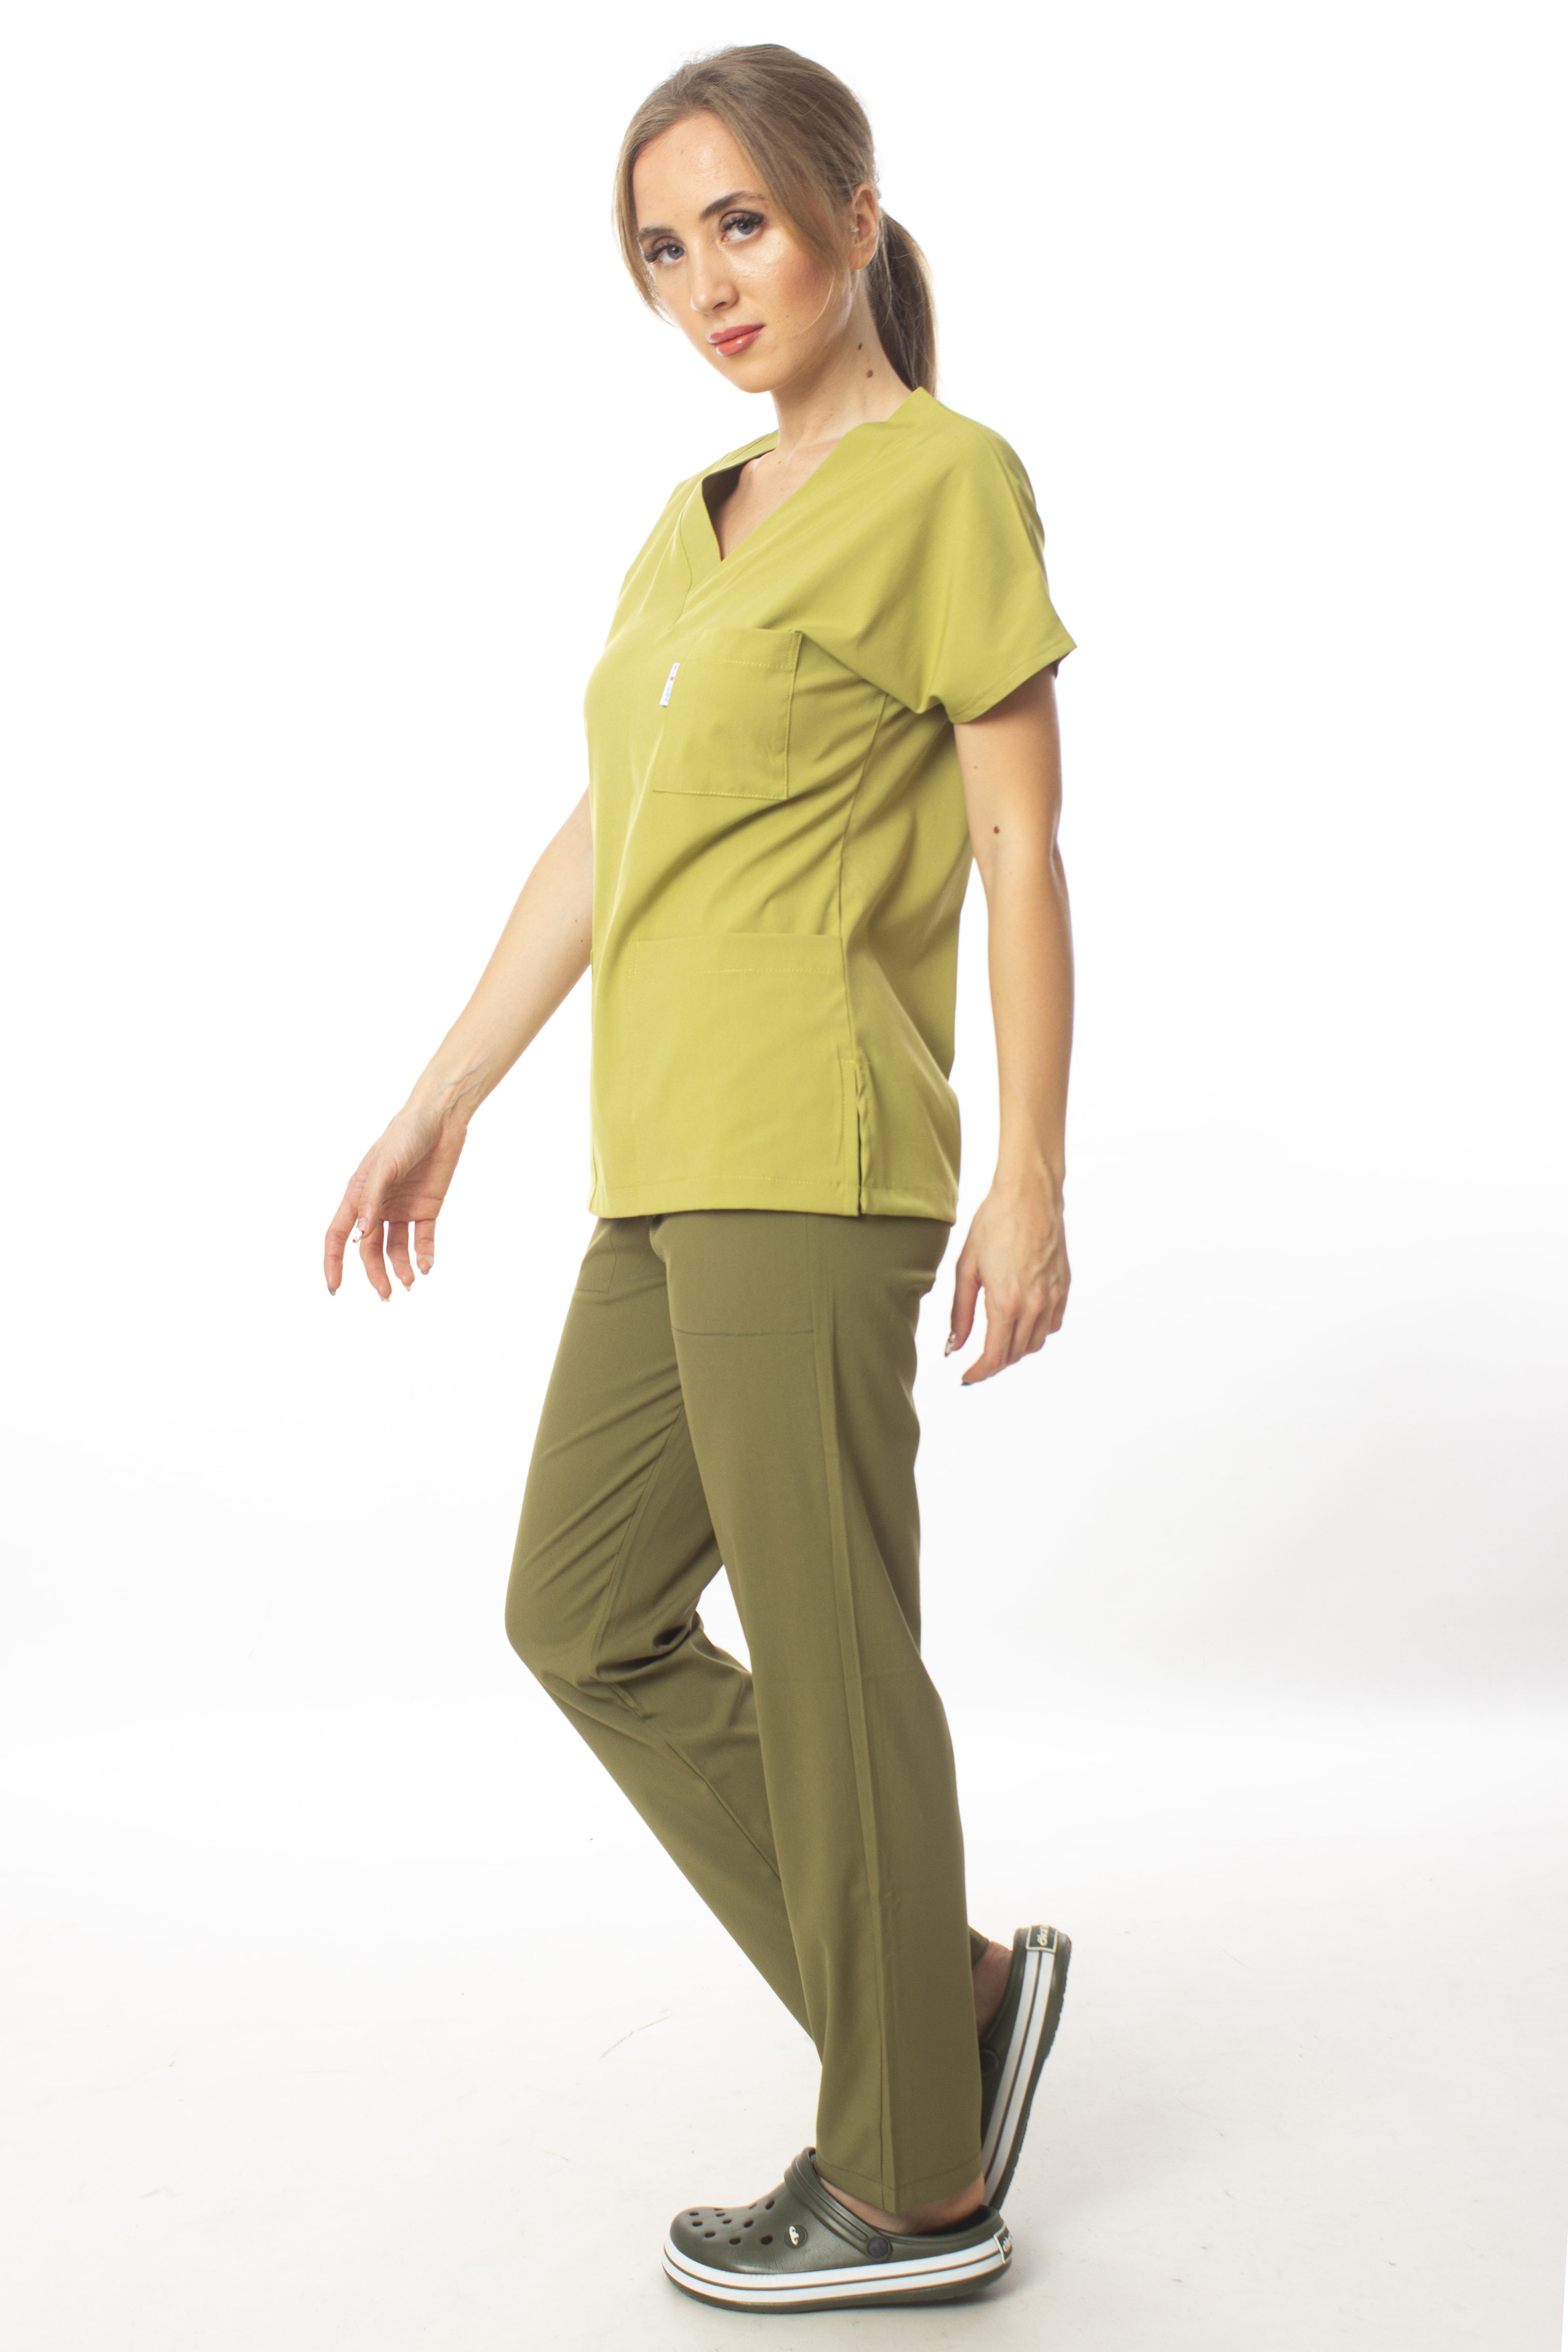 Premium Kumaş Likralı Cerrahi Doktor Hemşire Üst Fıstık Yeşili Alt Haki Yeşili Forma Takım